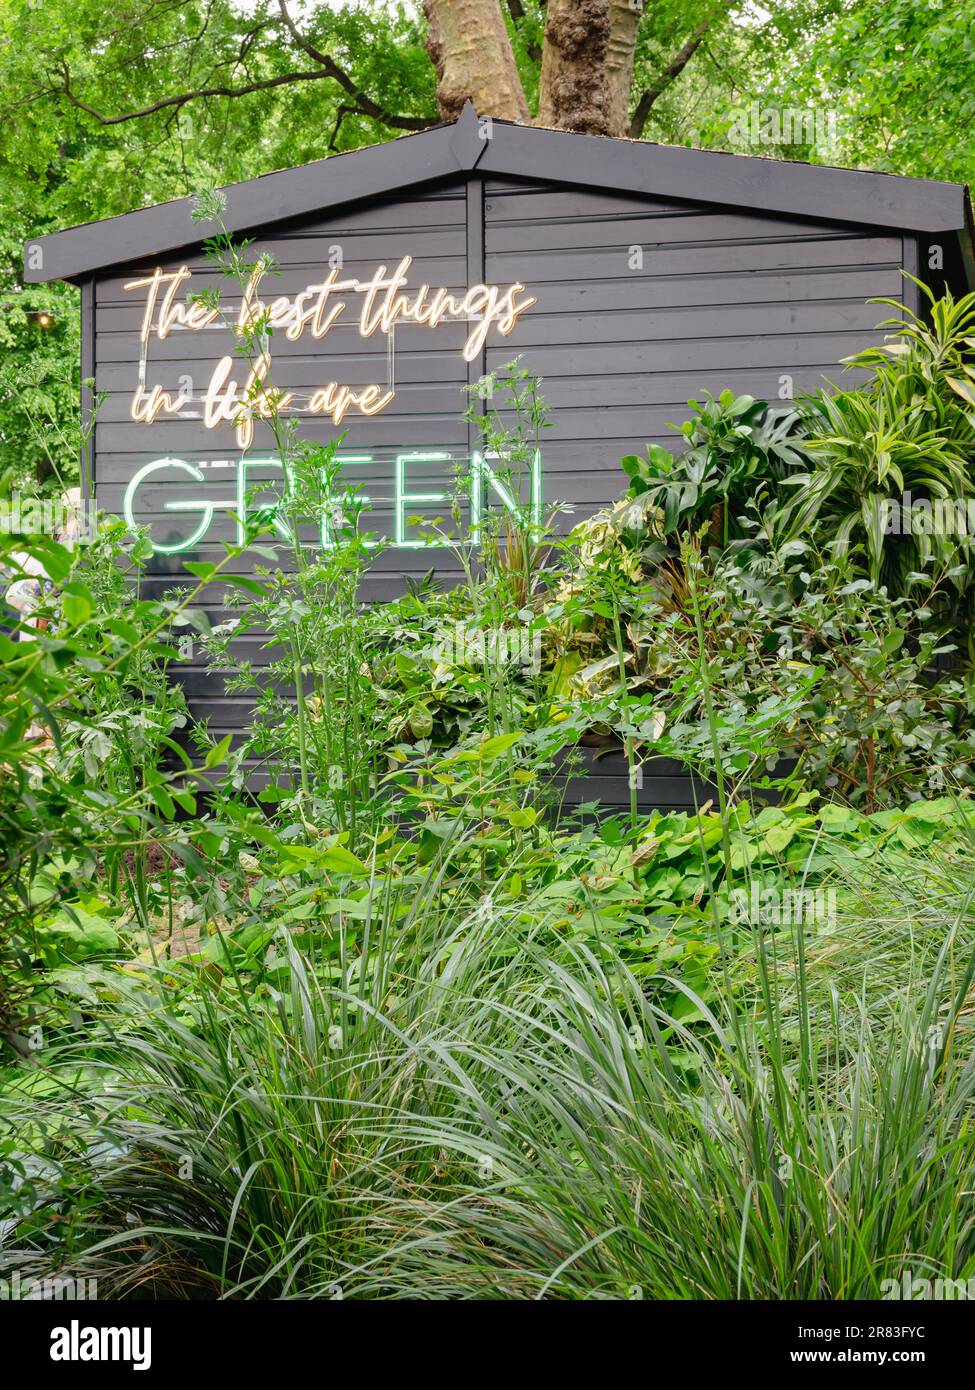 Les meilleures choses dans la vie sont vertes, signe sur un hangar Banque D'Images